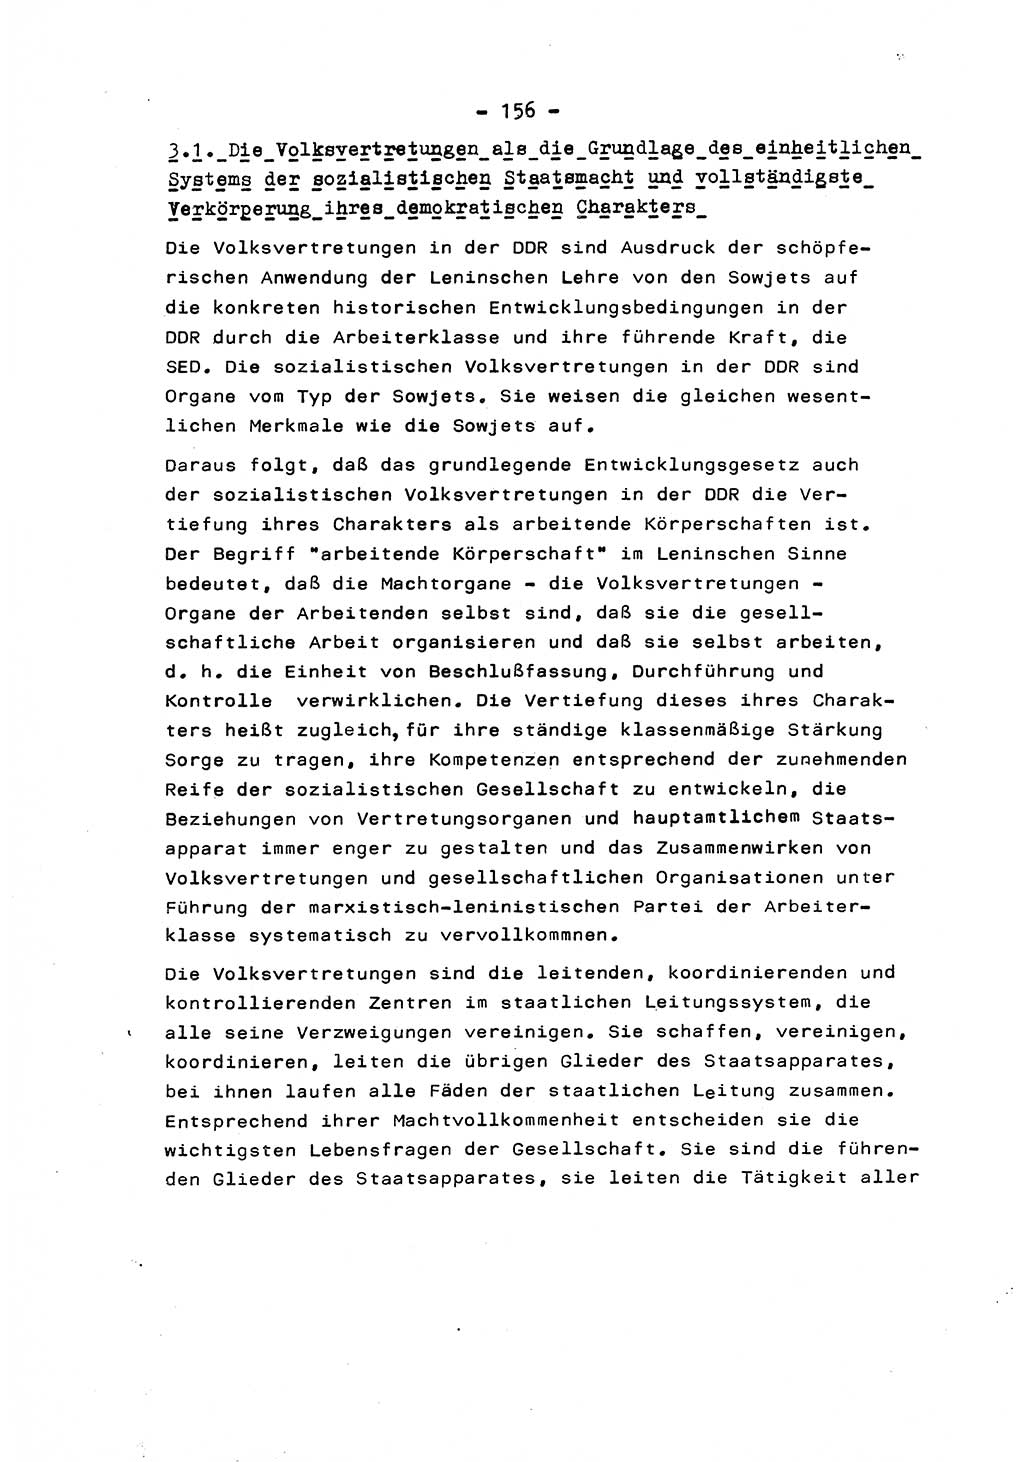 Marxistisch-leninistische Staats- und Rechtstheorie [Deutsche Demokratische Republik (DDR)] 1975, Seite 156 (ML St.-R.-Th. DDR 1975, S. 156)